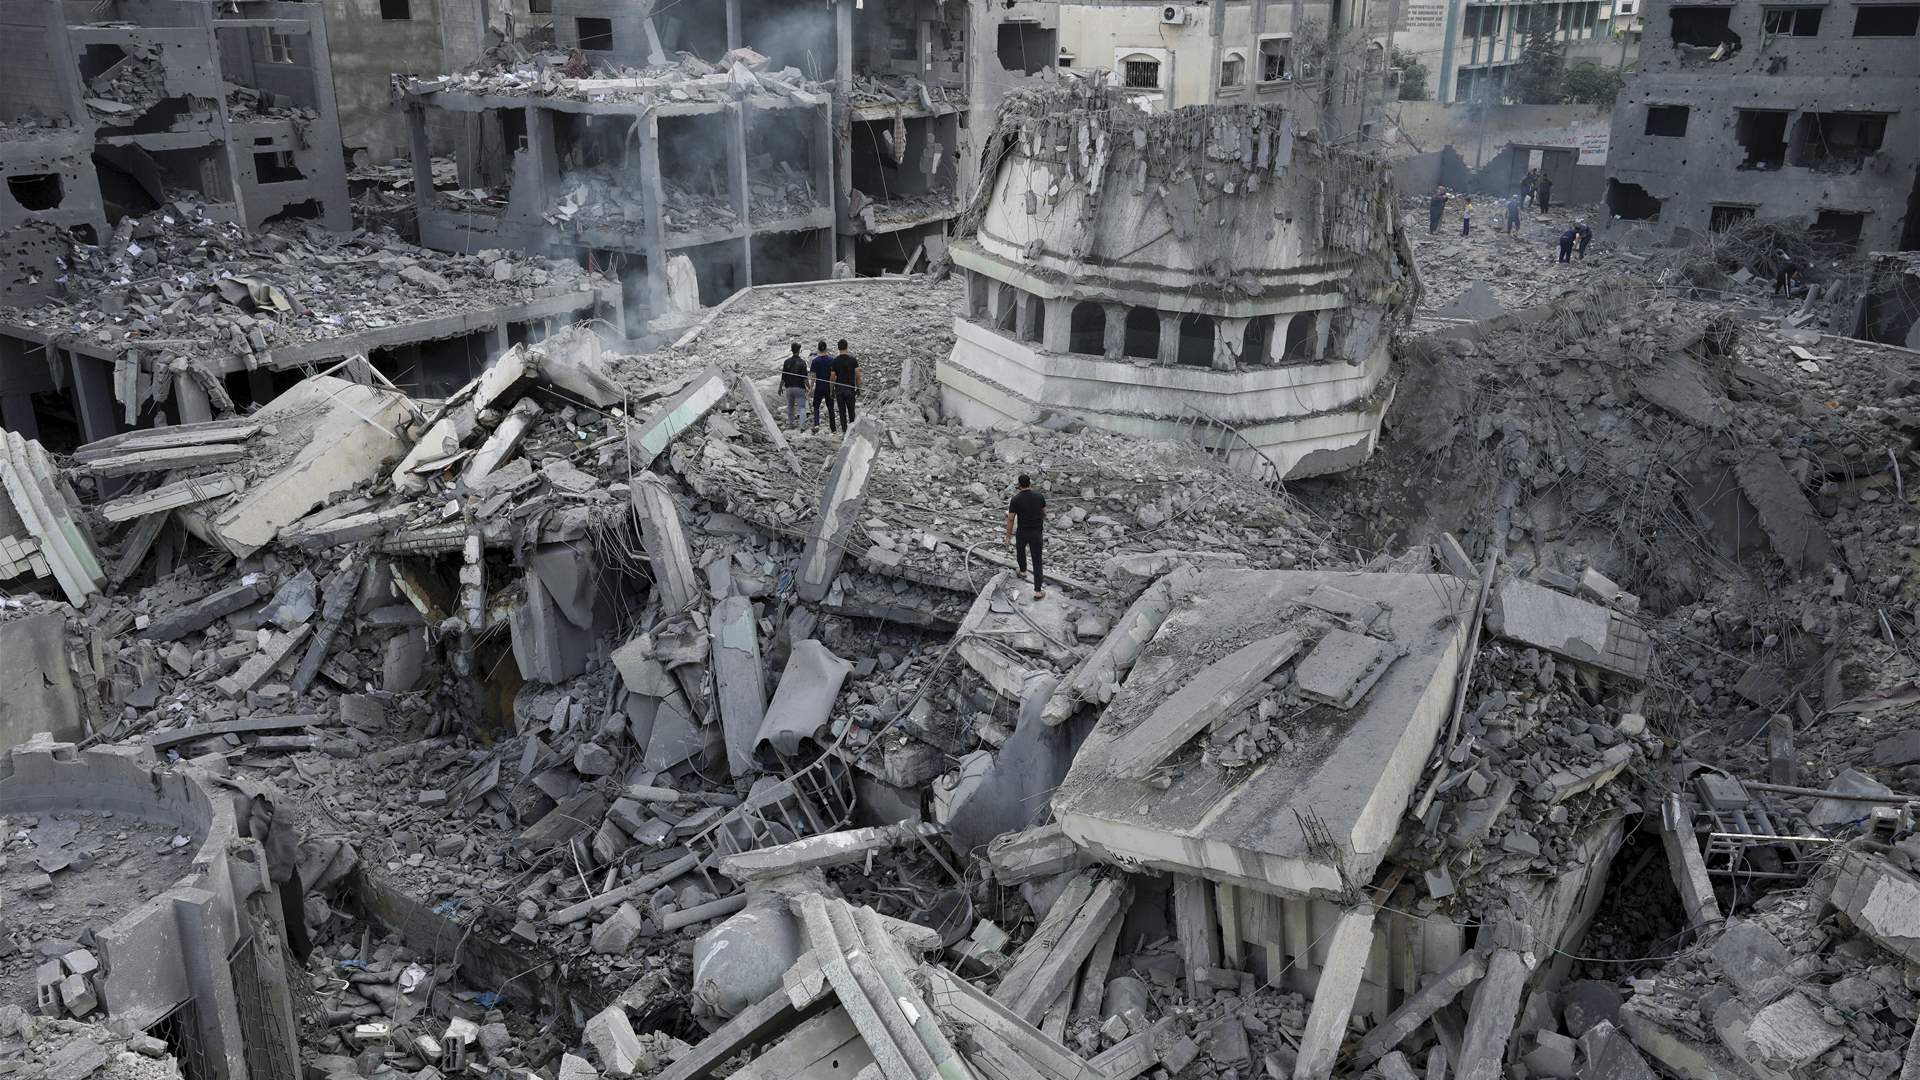 Al Jazeera: Israeli fighter jets hit another mosque in Gaza